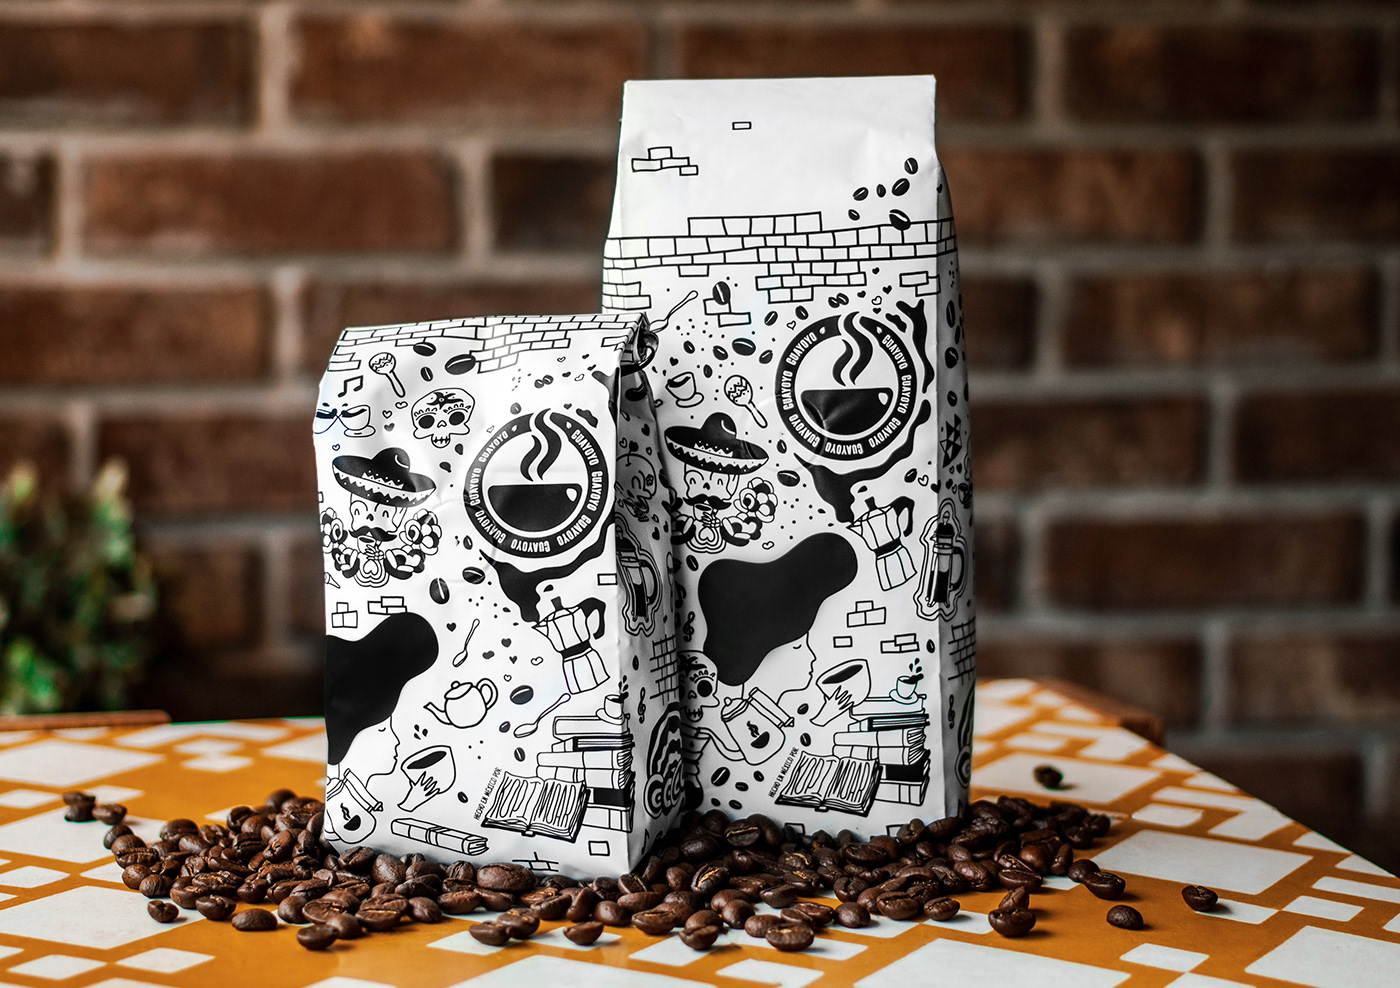 Coffee culture design diseno de empaque Empaque Café ilustraciones ilustration mexican culture mexico Packaging